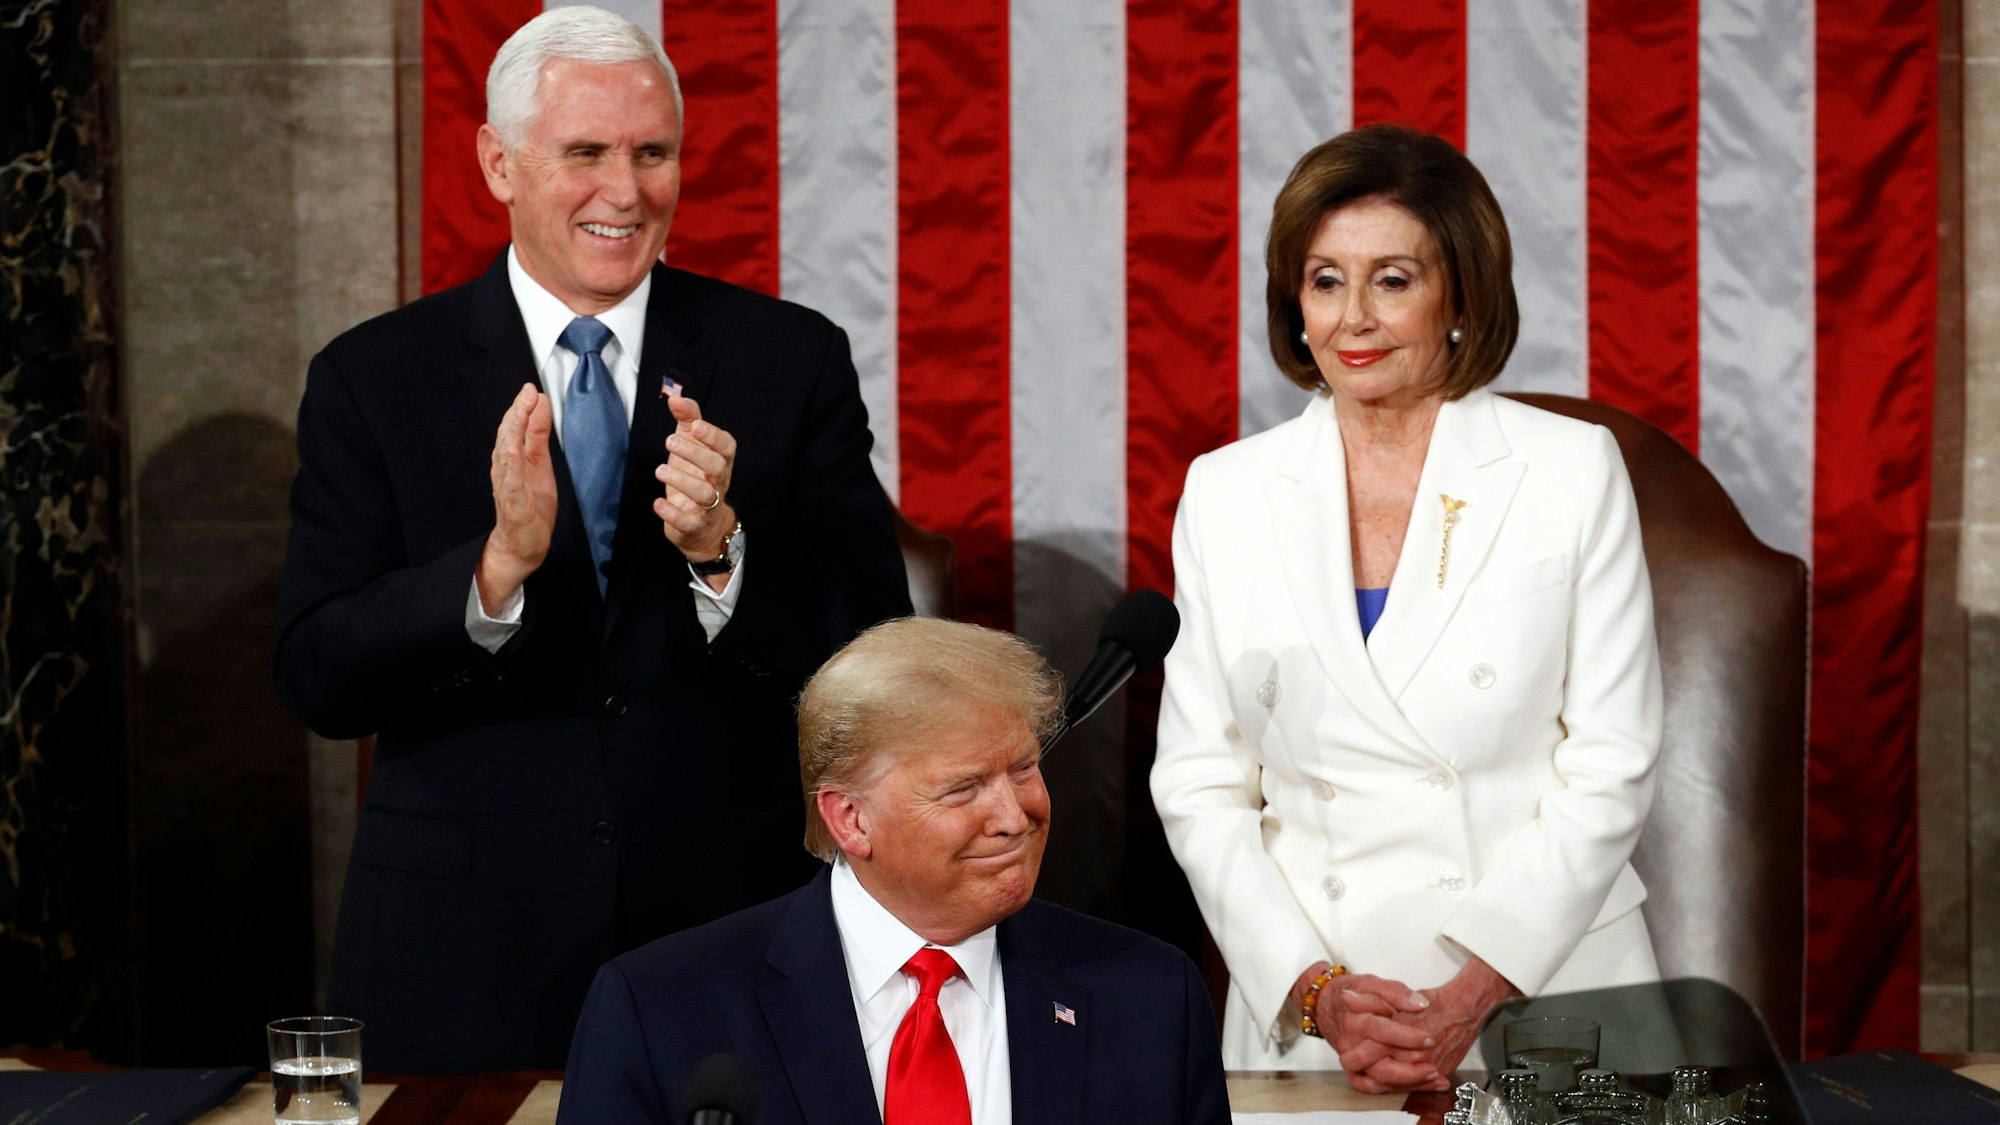 Donald Trump steht im Vordergrund vor einem Mikrofon, im Hintergrund applaudiert Mike Pence, Nancy Pelosi hat die Hände gefaltet. An der Wand hängt eine große Flagge der USA.